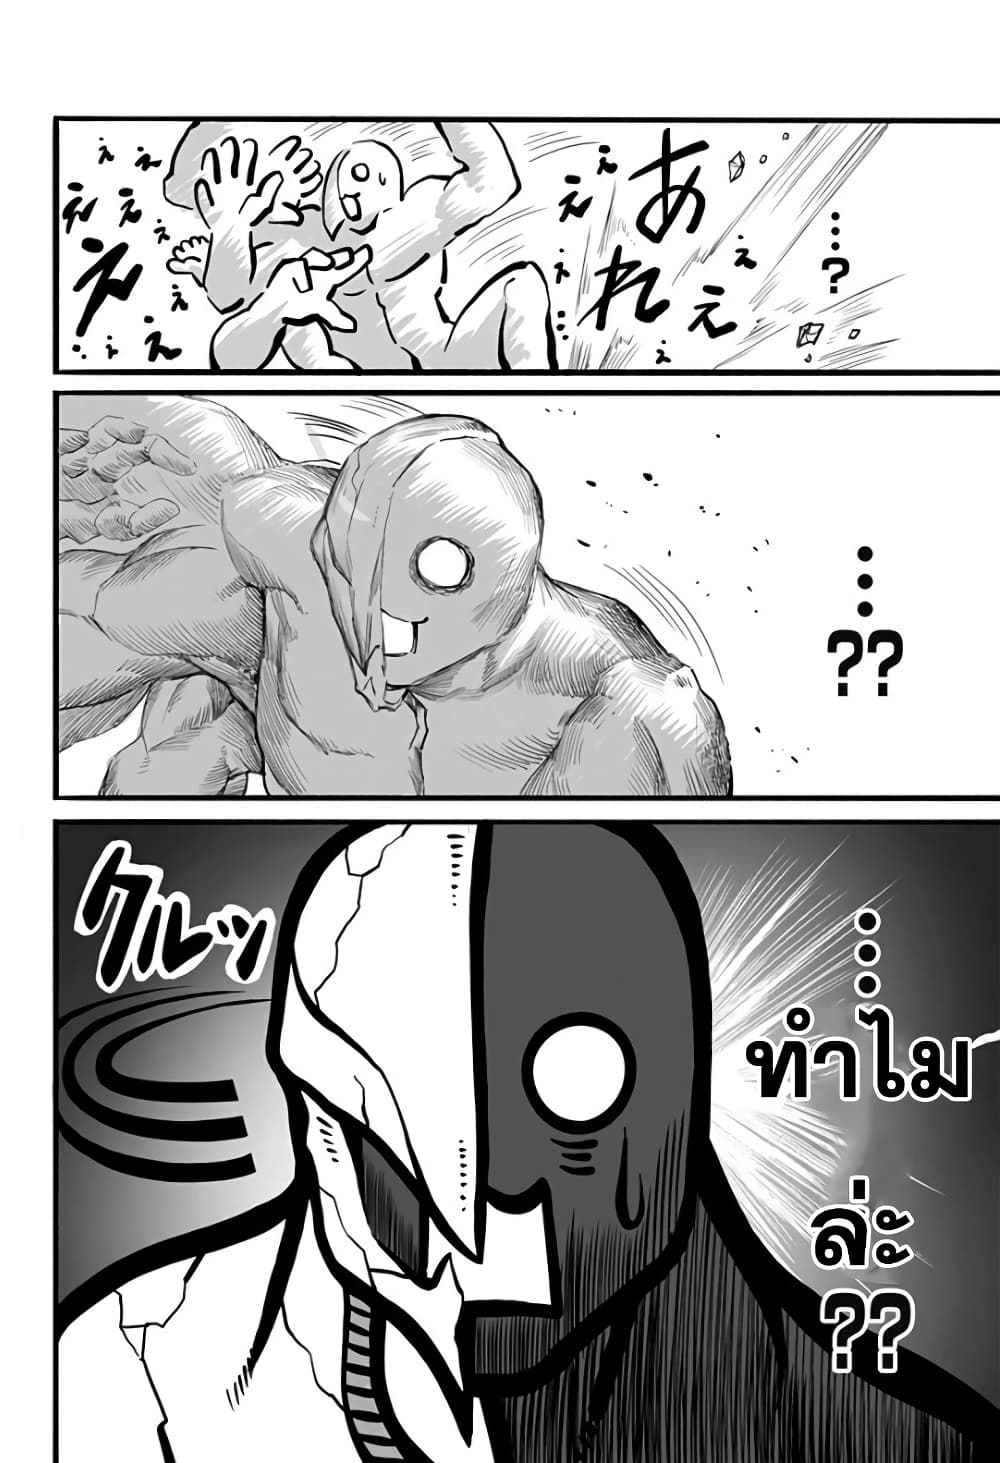 อ่านการ์ตูน Mutant wa ningen no kanojo to kisu ga shitai 13 ภาพที่ 8